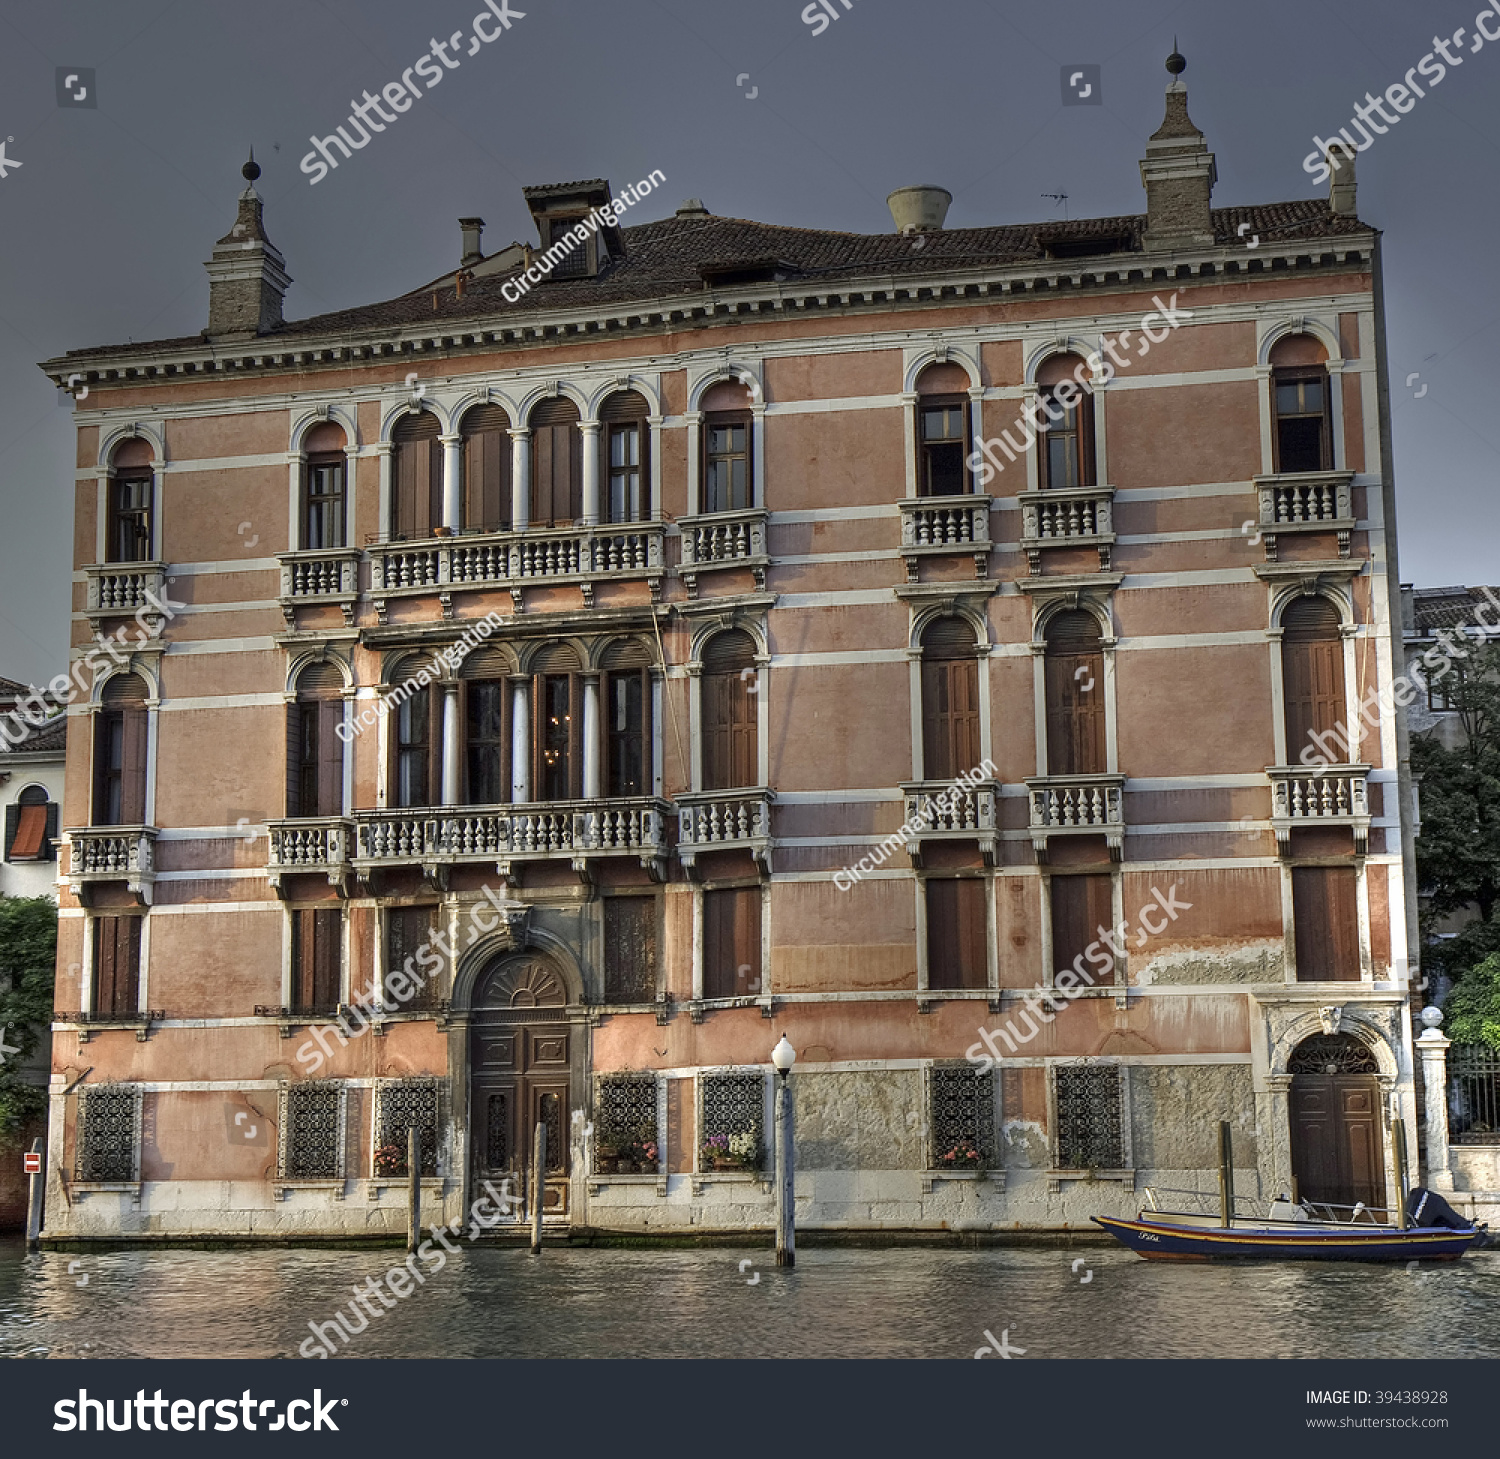 Palazzo Fontana Rezzonico, Venice, Italy Stock Photo 39438928 ...